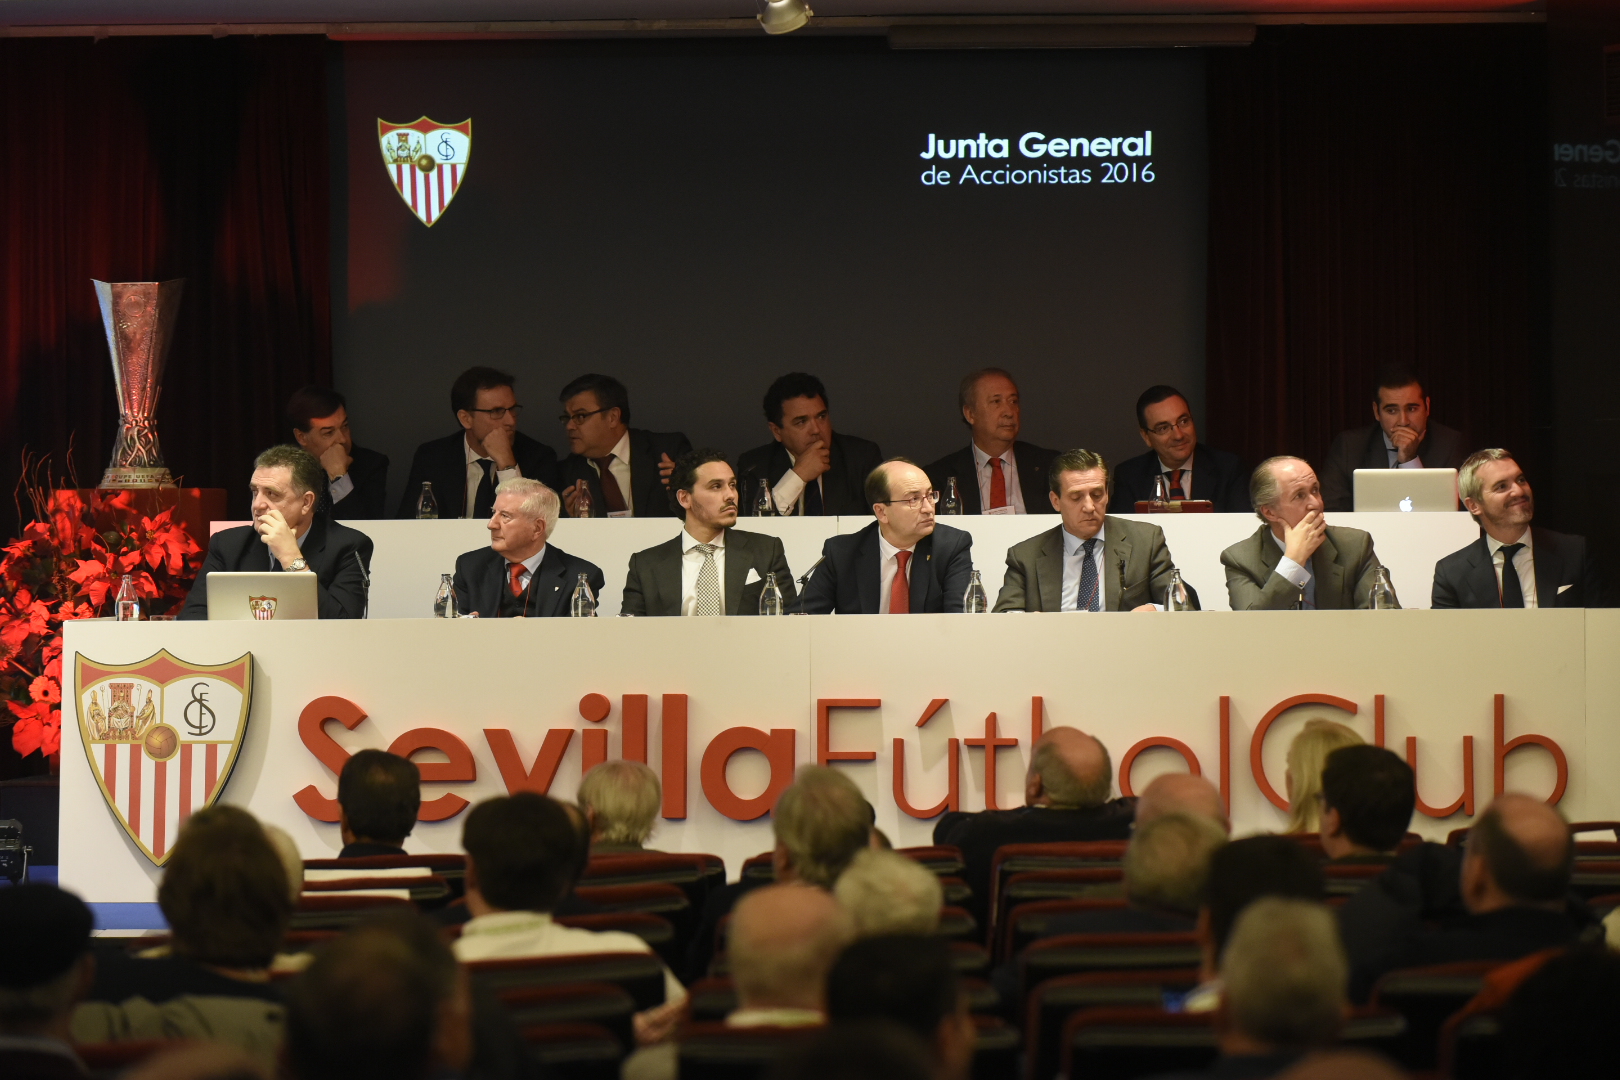 Junta de Accionistas del Sevilla FC